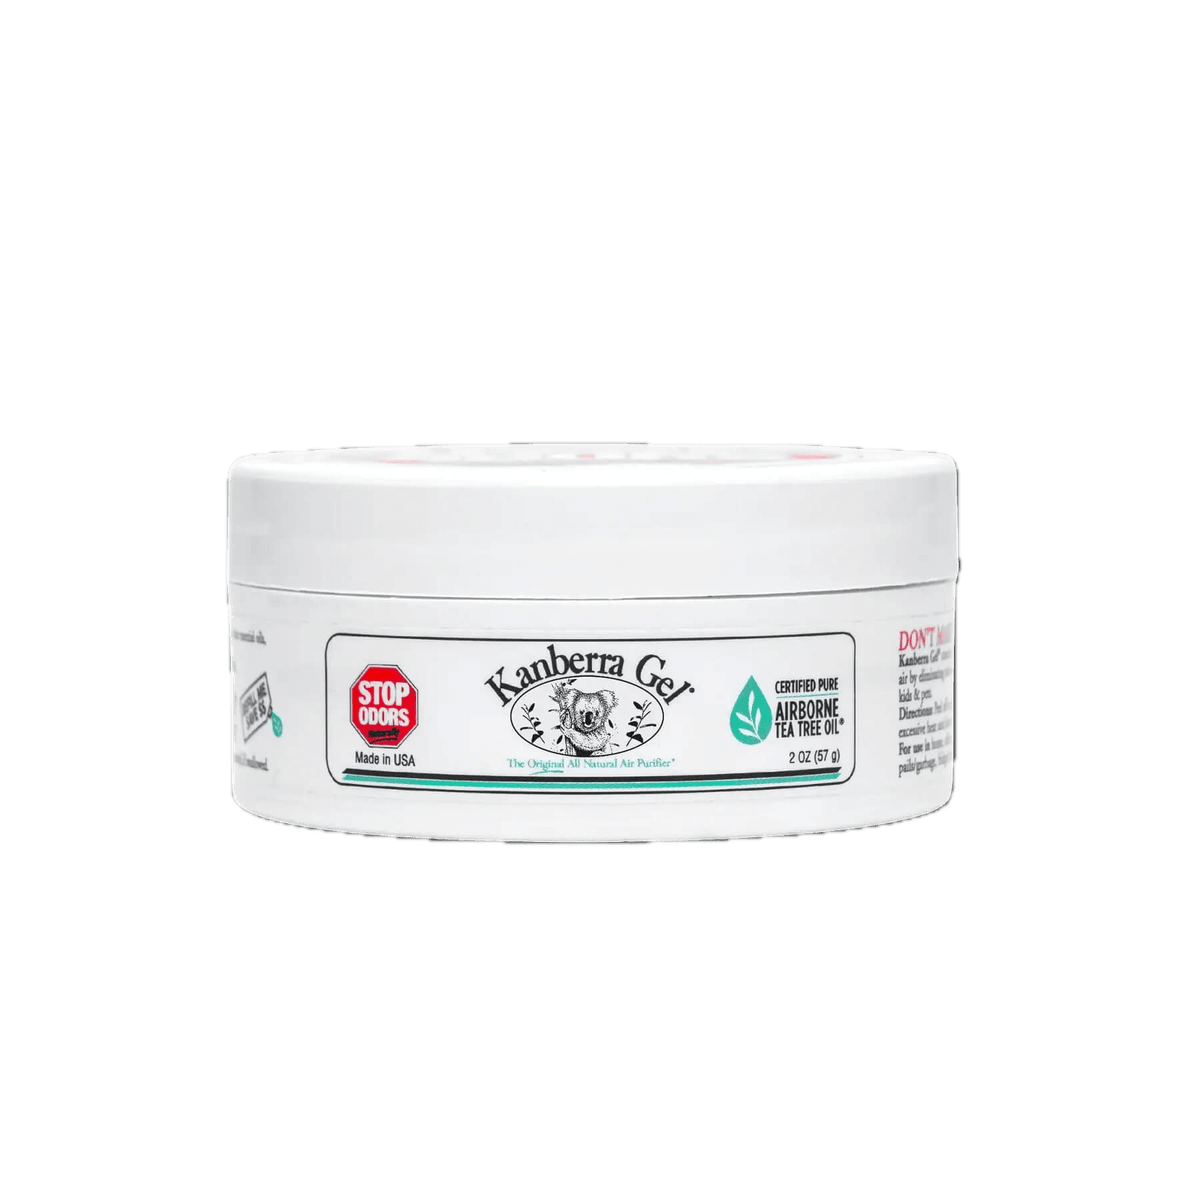 Kanberra Gel® All-Natural Air Purifier